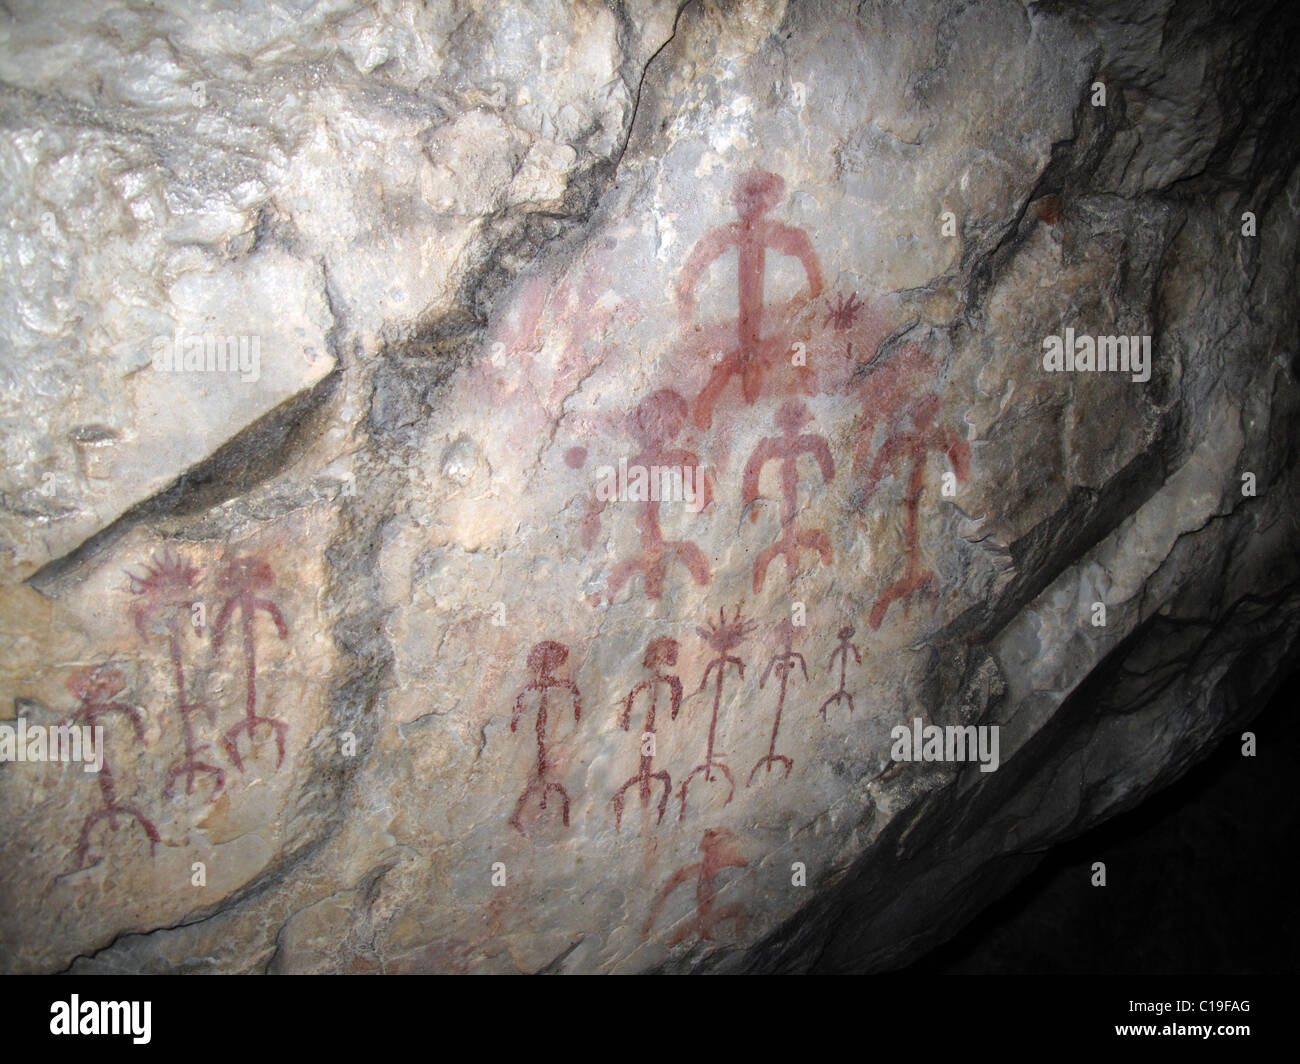 Pinturas rupestres de la cueva del Castillo Parque Nacional Monfrague Extremadura España Foto de stock